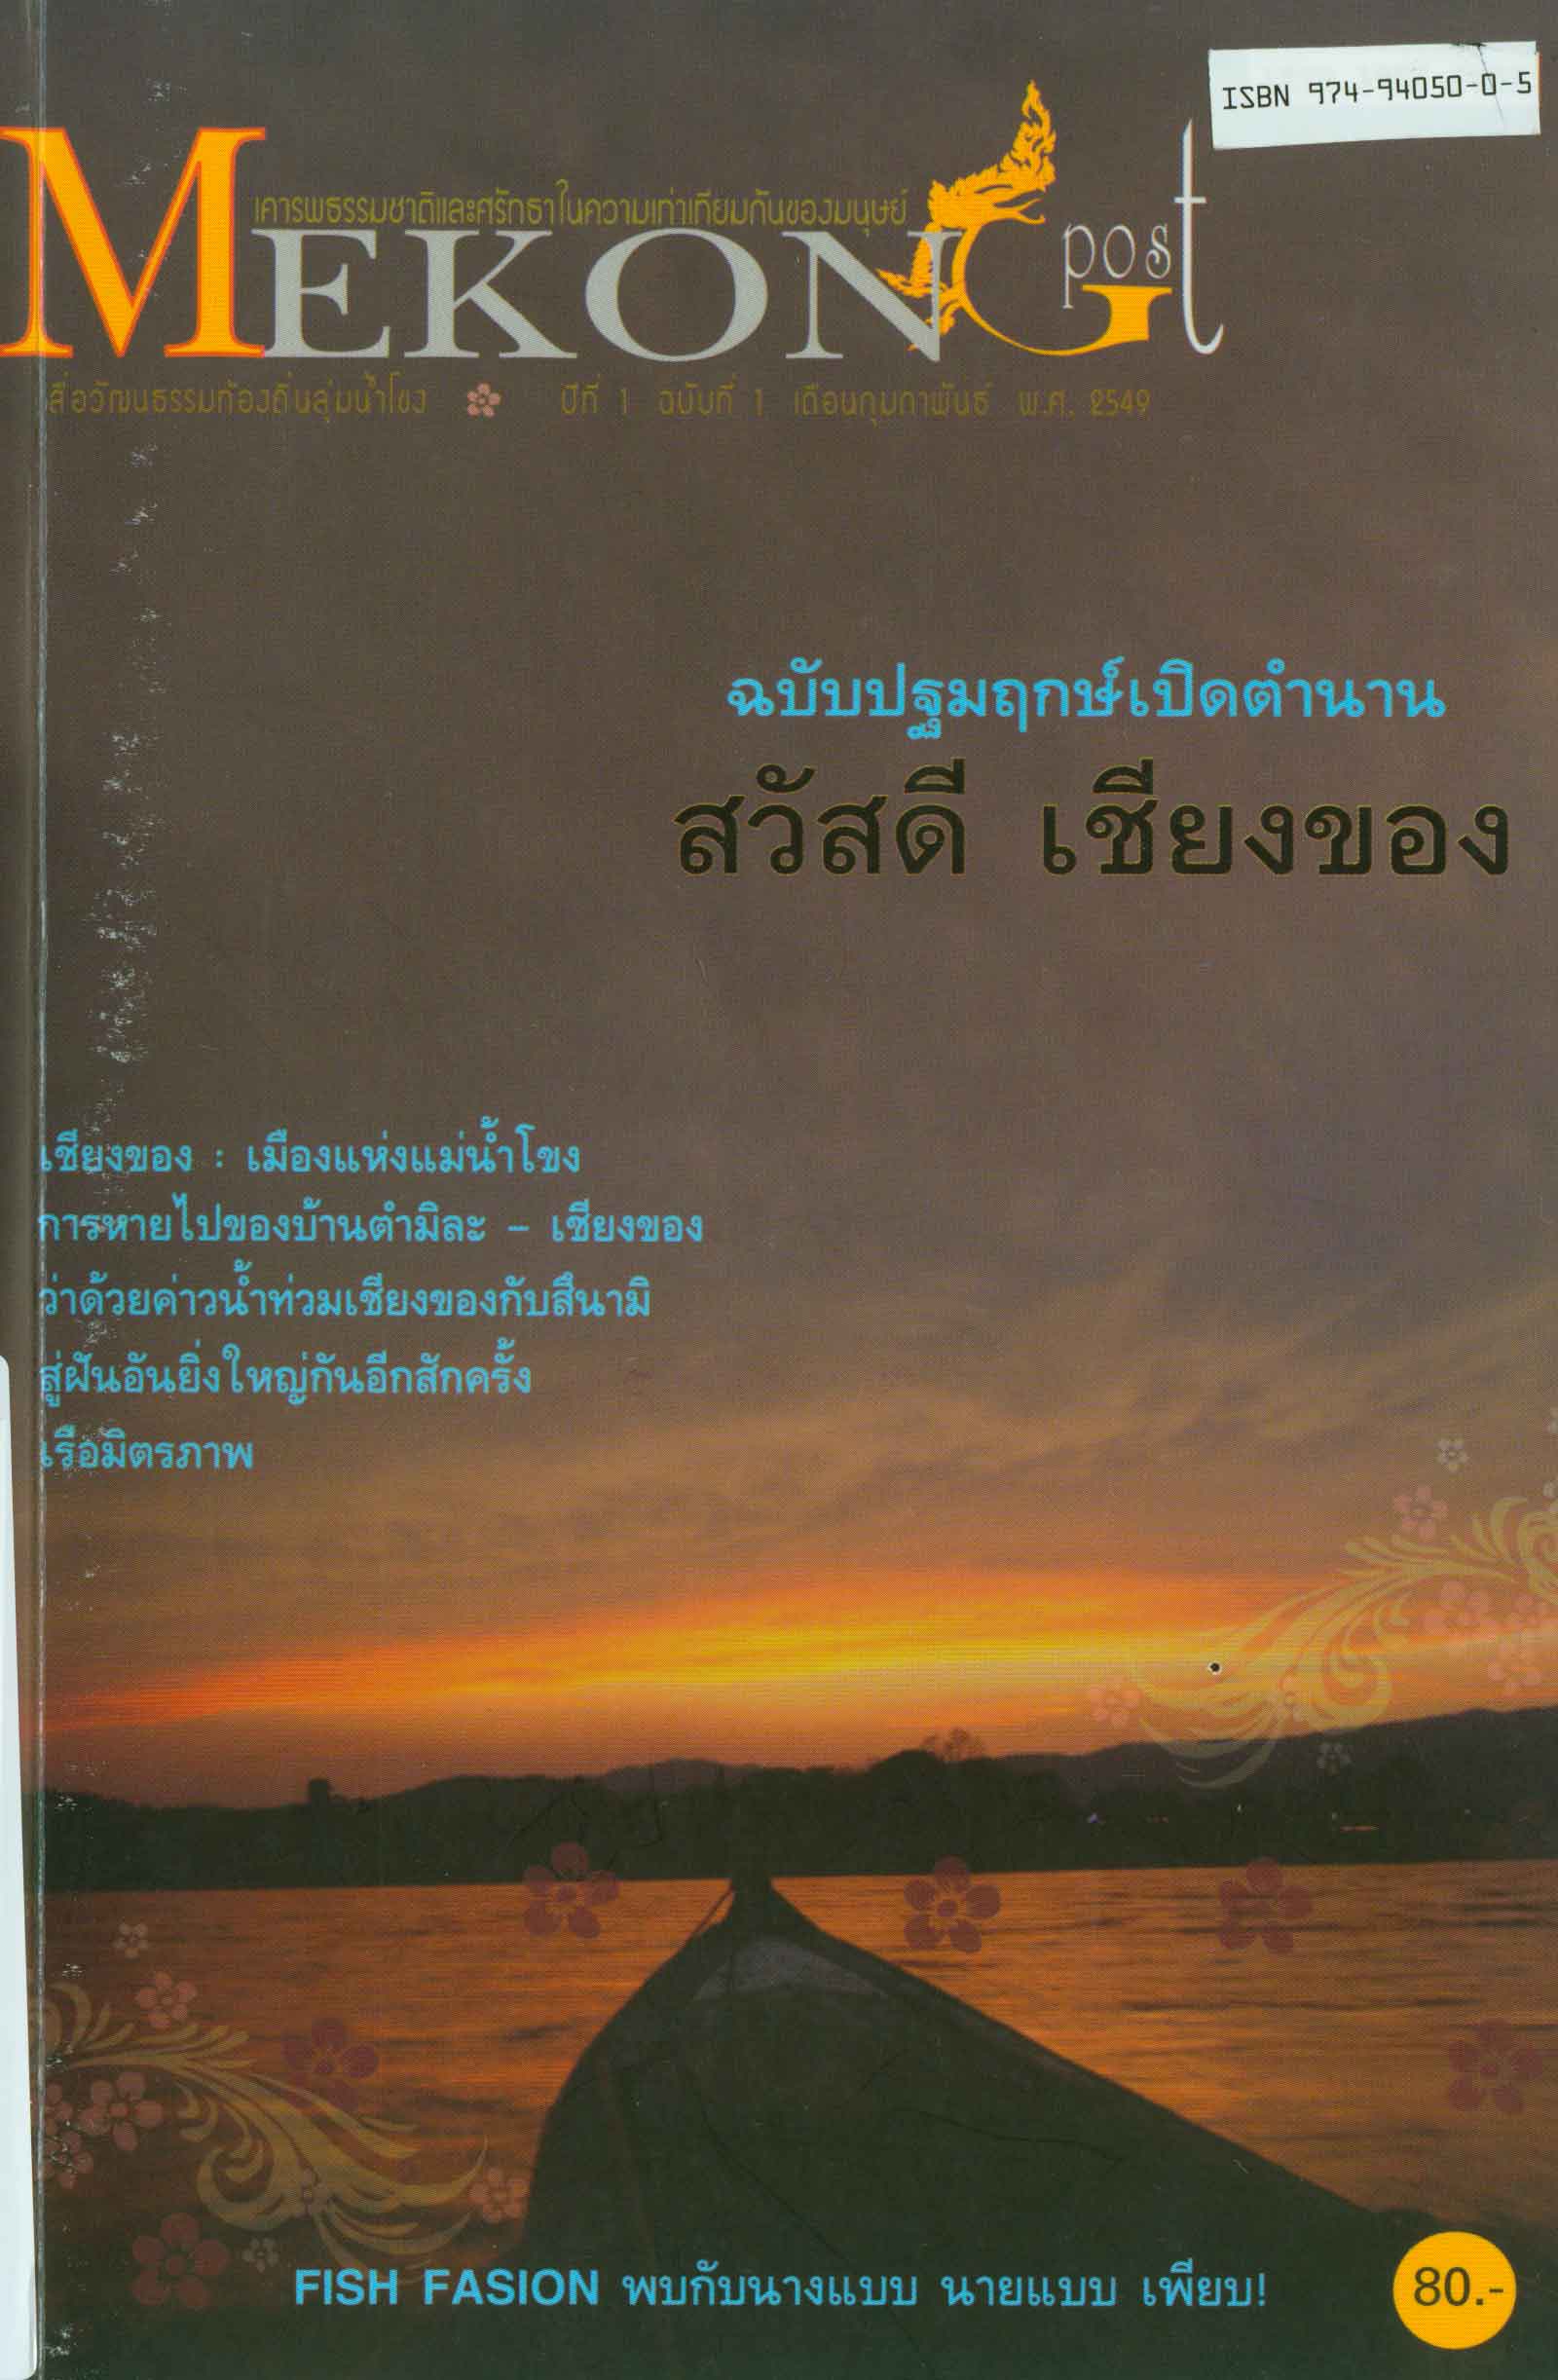 Mekong Post